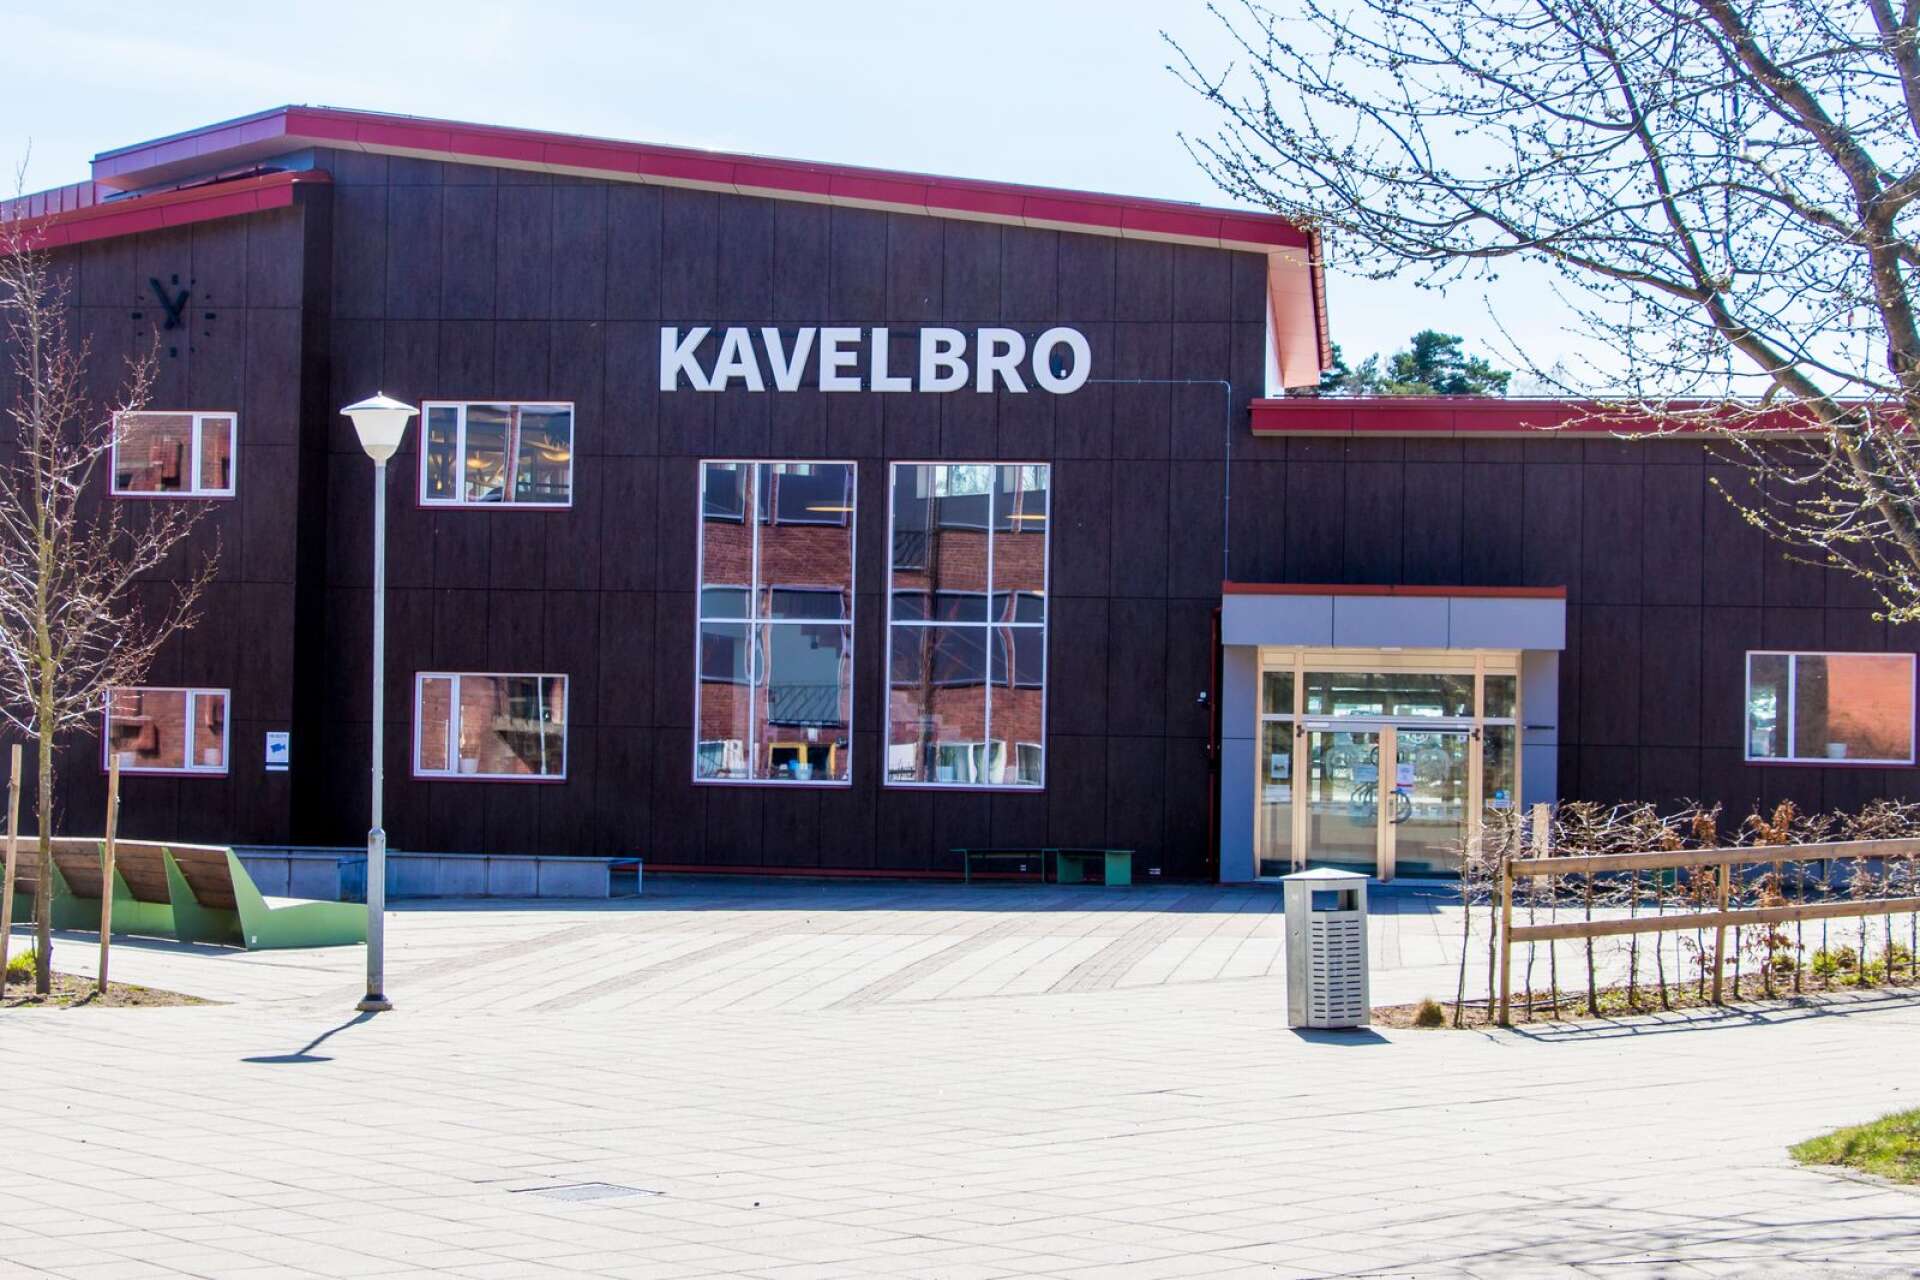 Skolinspektionen har gjort en tillsyn av introduktionsprogrammen på Kavelbrogymnasiet som får godkänt av myndigheten.